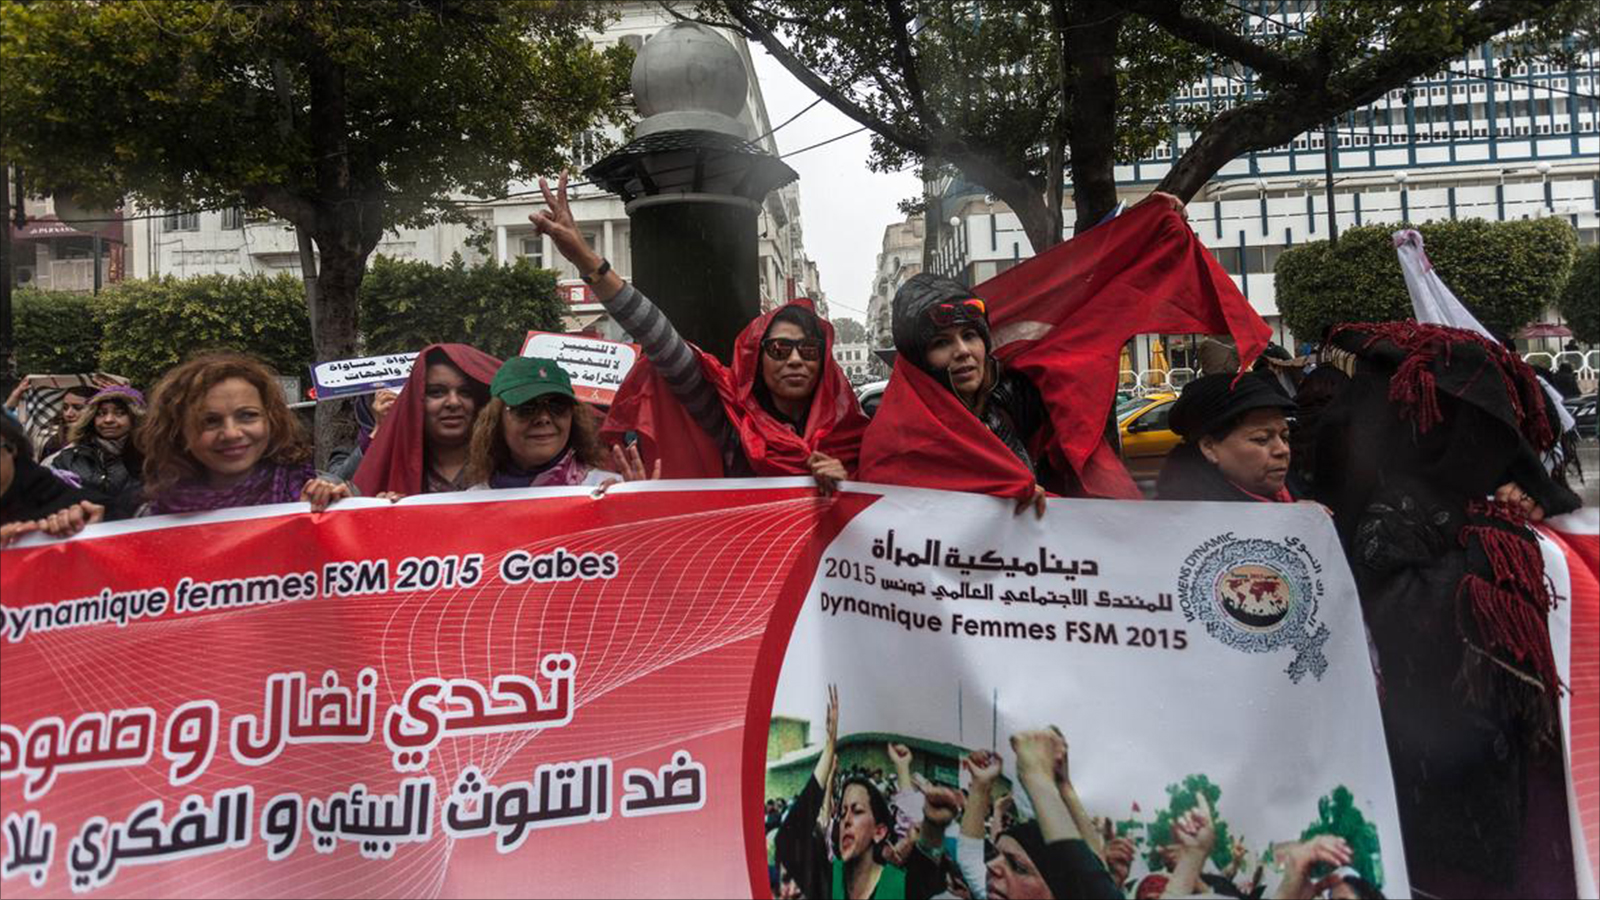 ‪التونسيات تظاهرن بمناسبات عديدة لرفض العنف وللمطالبة بالمساواة مع الرجال‬ (الأناضول)